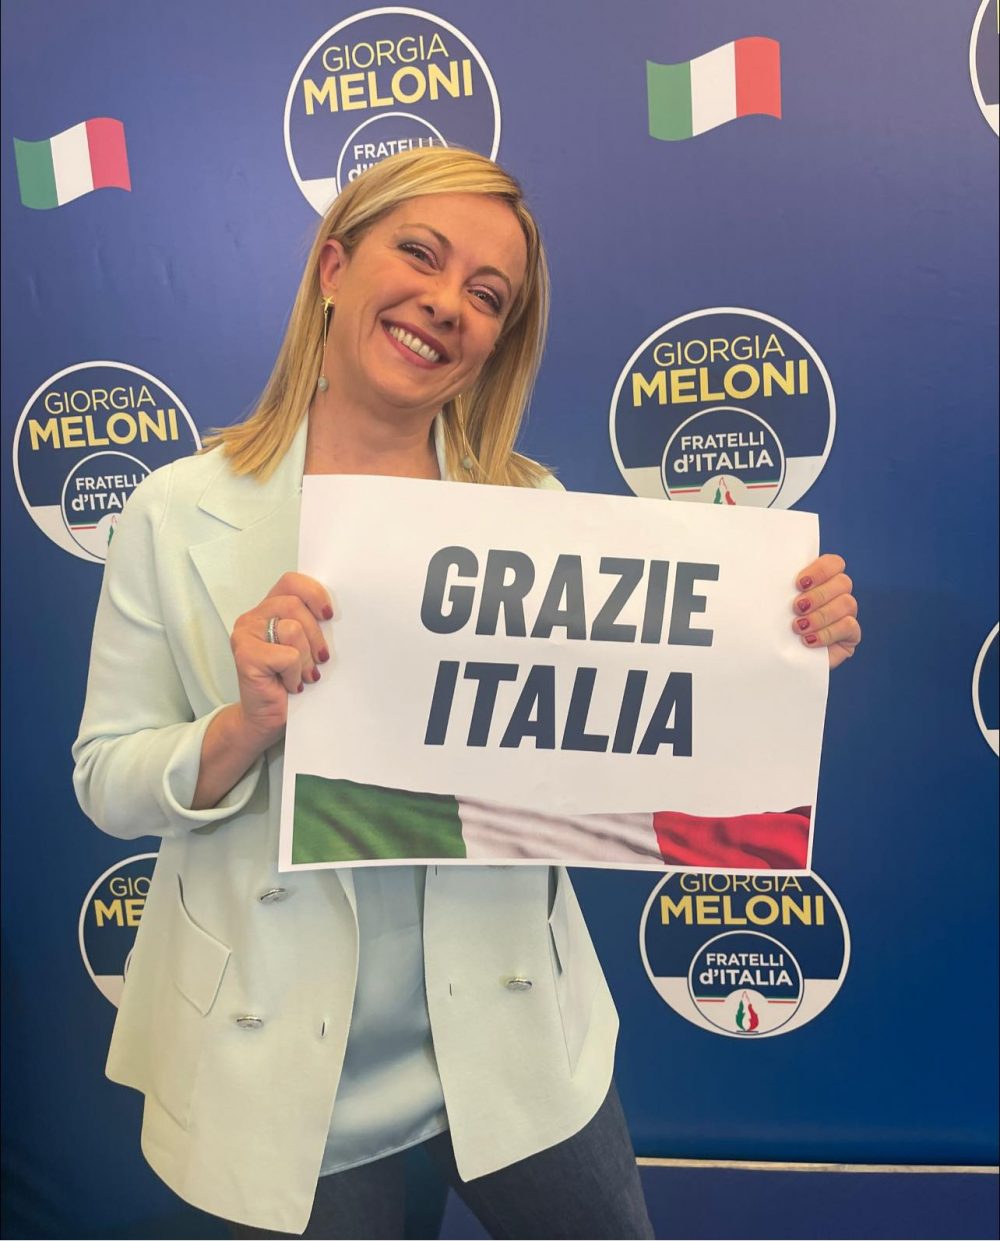 Georgia Meloni, puede convertirse en la primera mujer en gobernar Italia